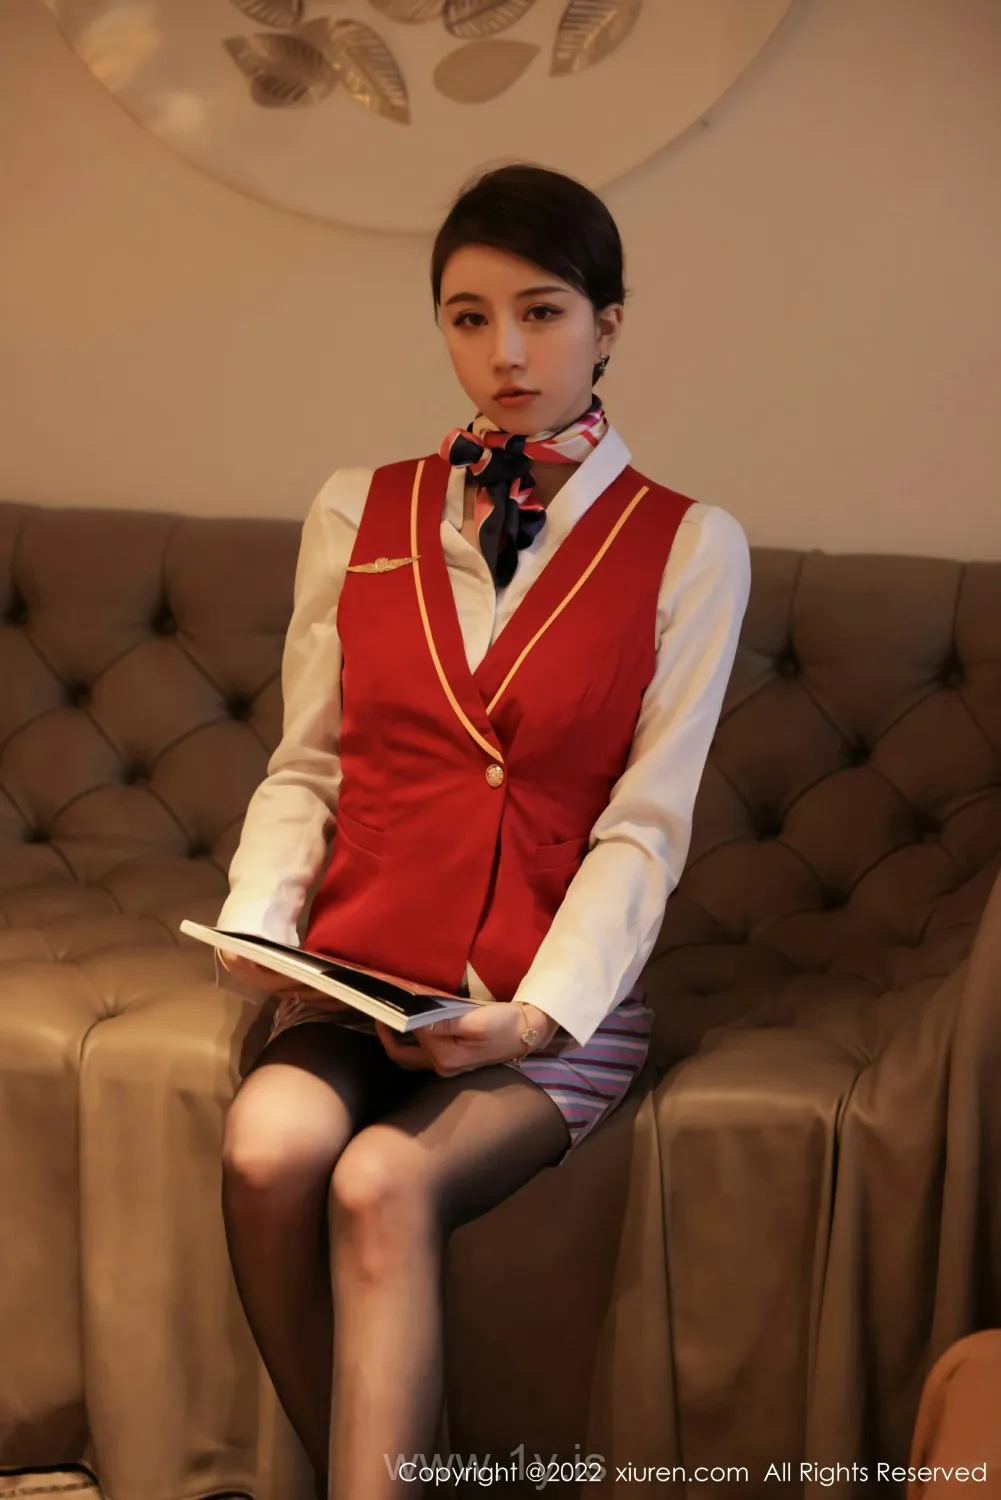 XIUREN(秀人网) NO.4824 Extraordinary & Pretty Asian Cutie tina_甜仔